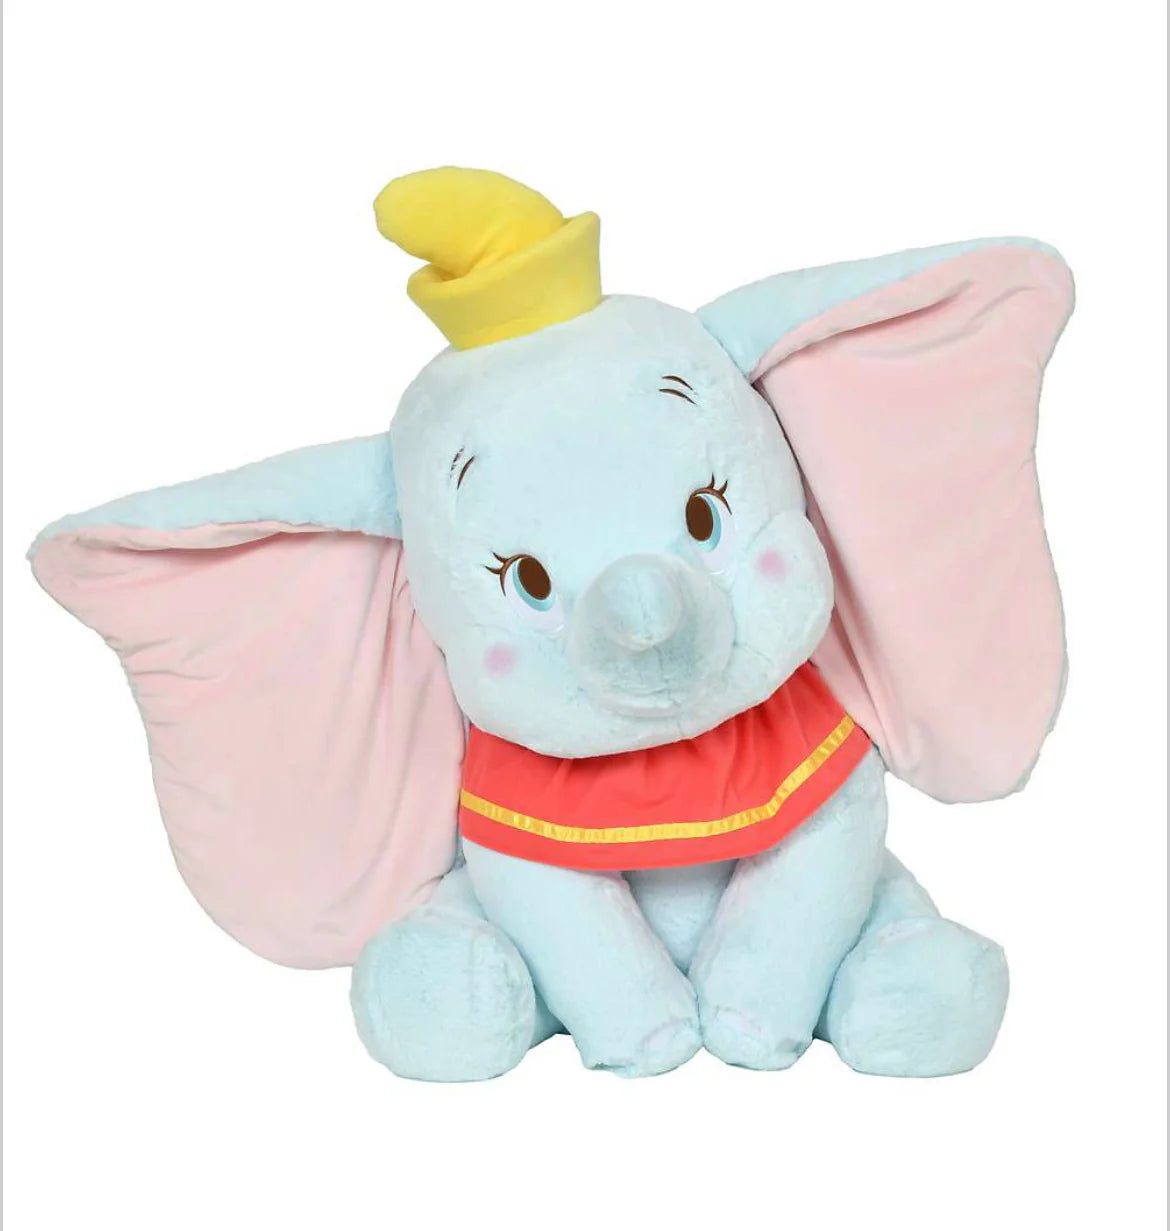 特大公仔 Super BIG size Dumbo 82cm 包日本直郵香港費用